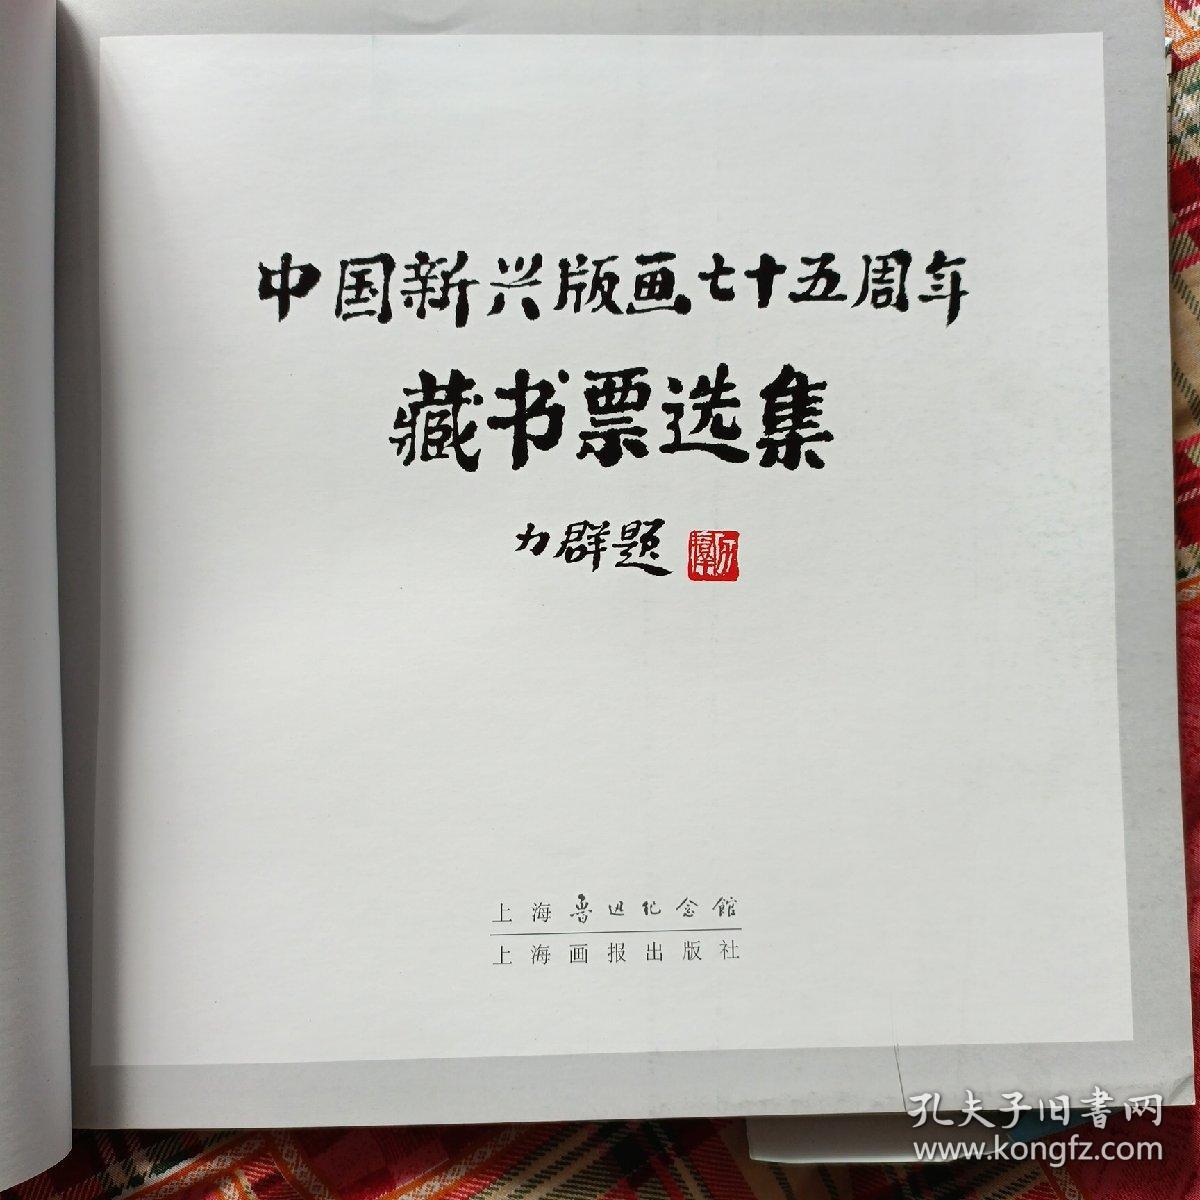 中国新兴版画75周年藏书票选集